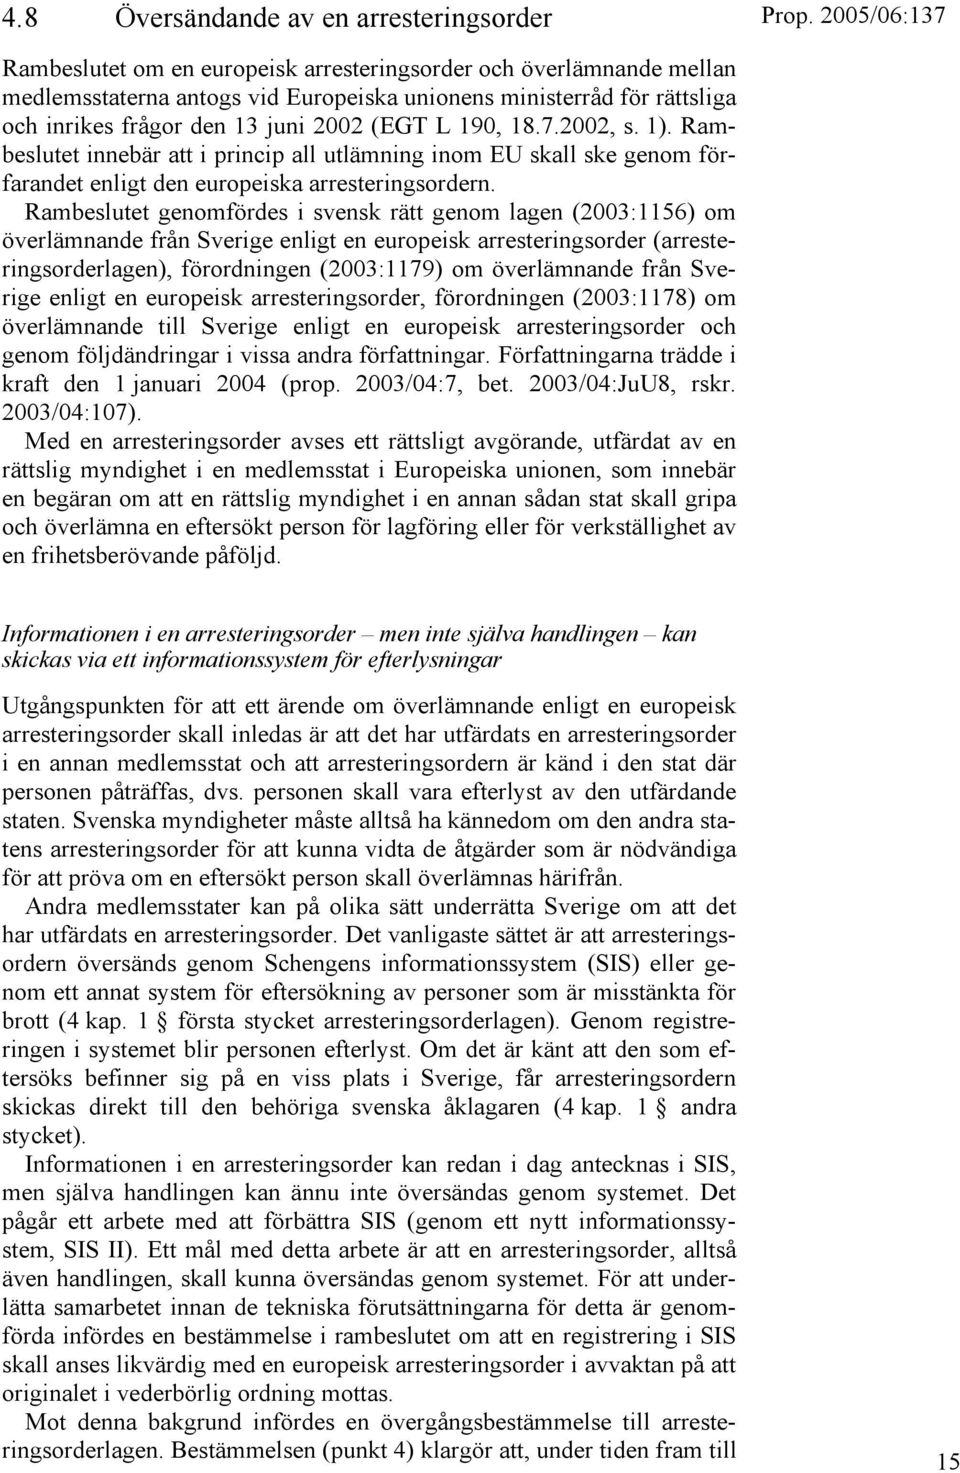 Rambeslutet genomfördes i svensk rätt genom lagen (2003:1156) om överlämnande från Sverige enligt en europeisk arresteringsorder (arresteringsorderlagen), förordningen (2003:1179) om överlämnande